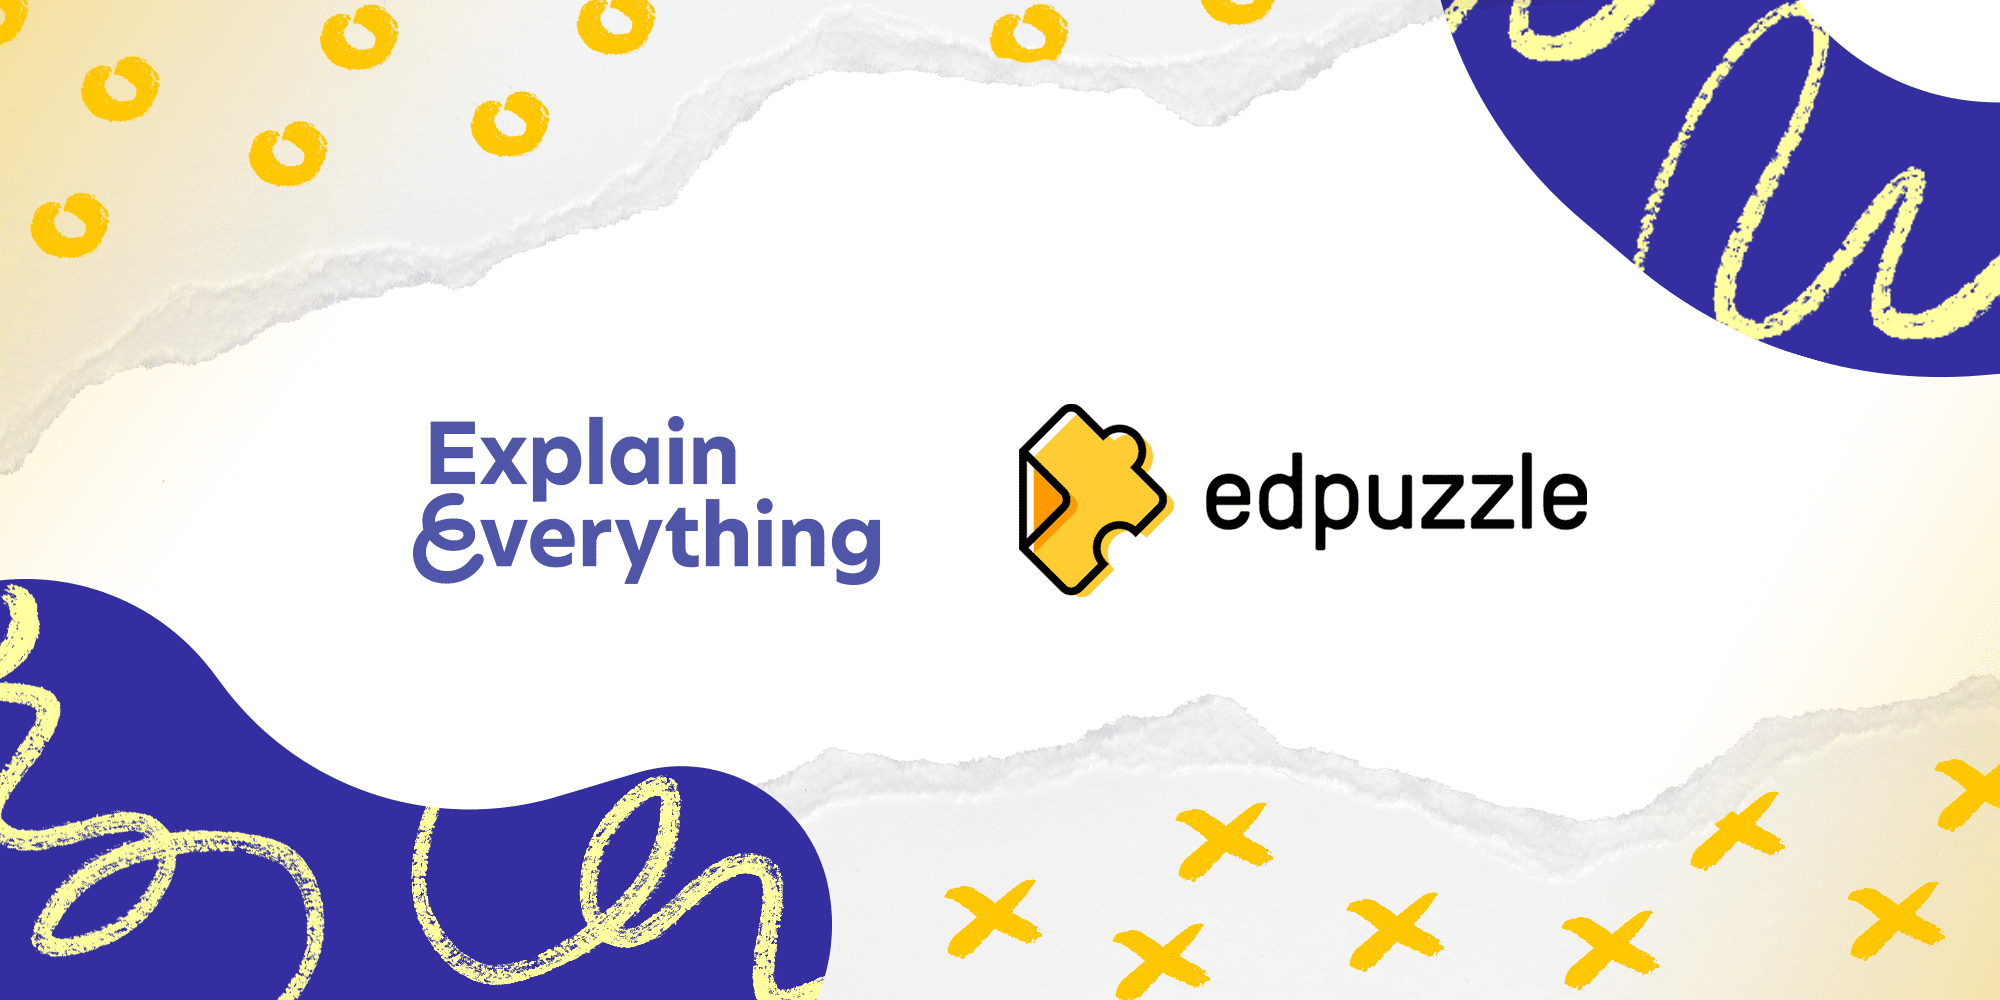 Video explain. Explain everything. Explain everything логотип. Edpuzzle. 3 Explain everything.